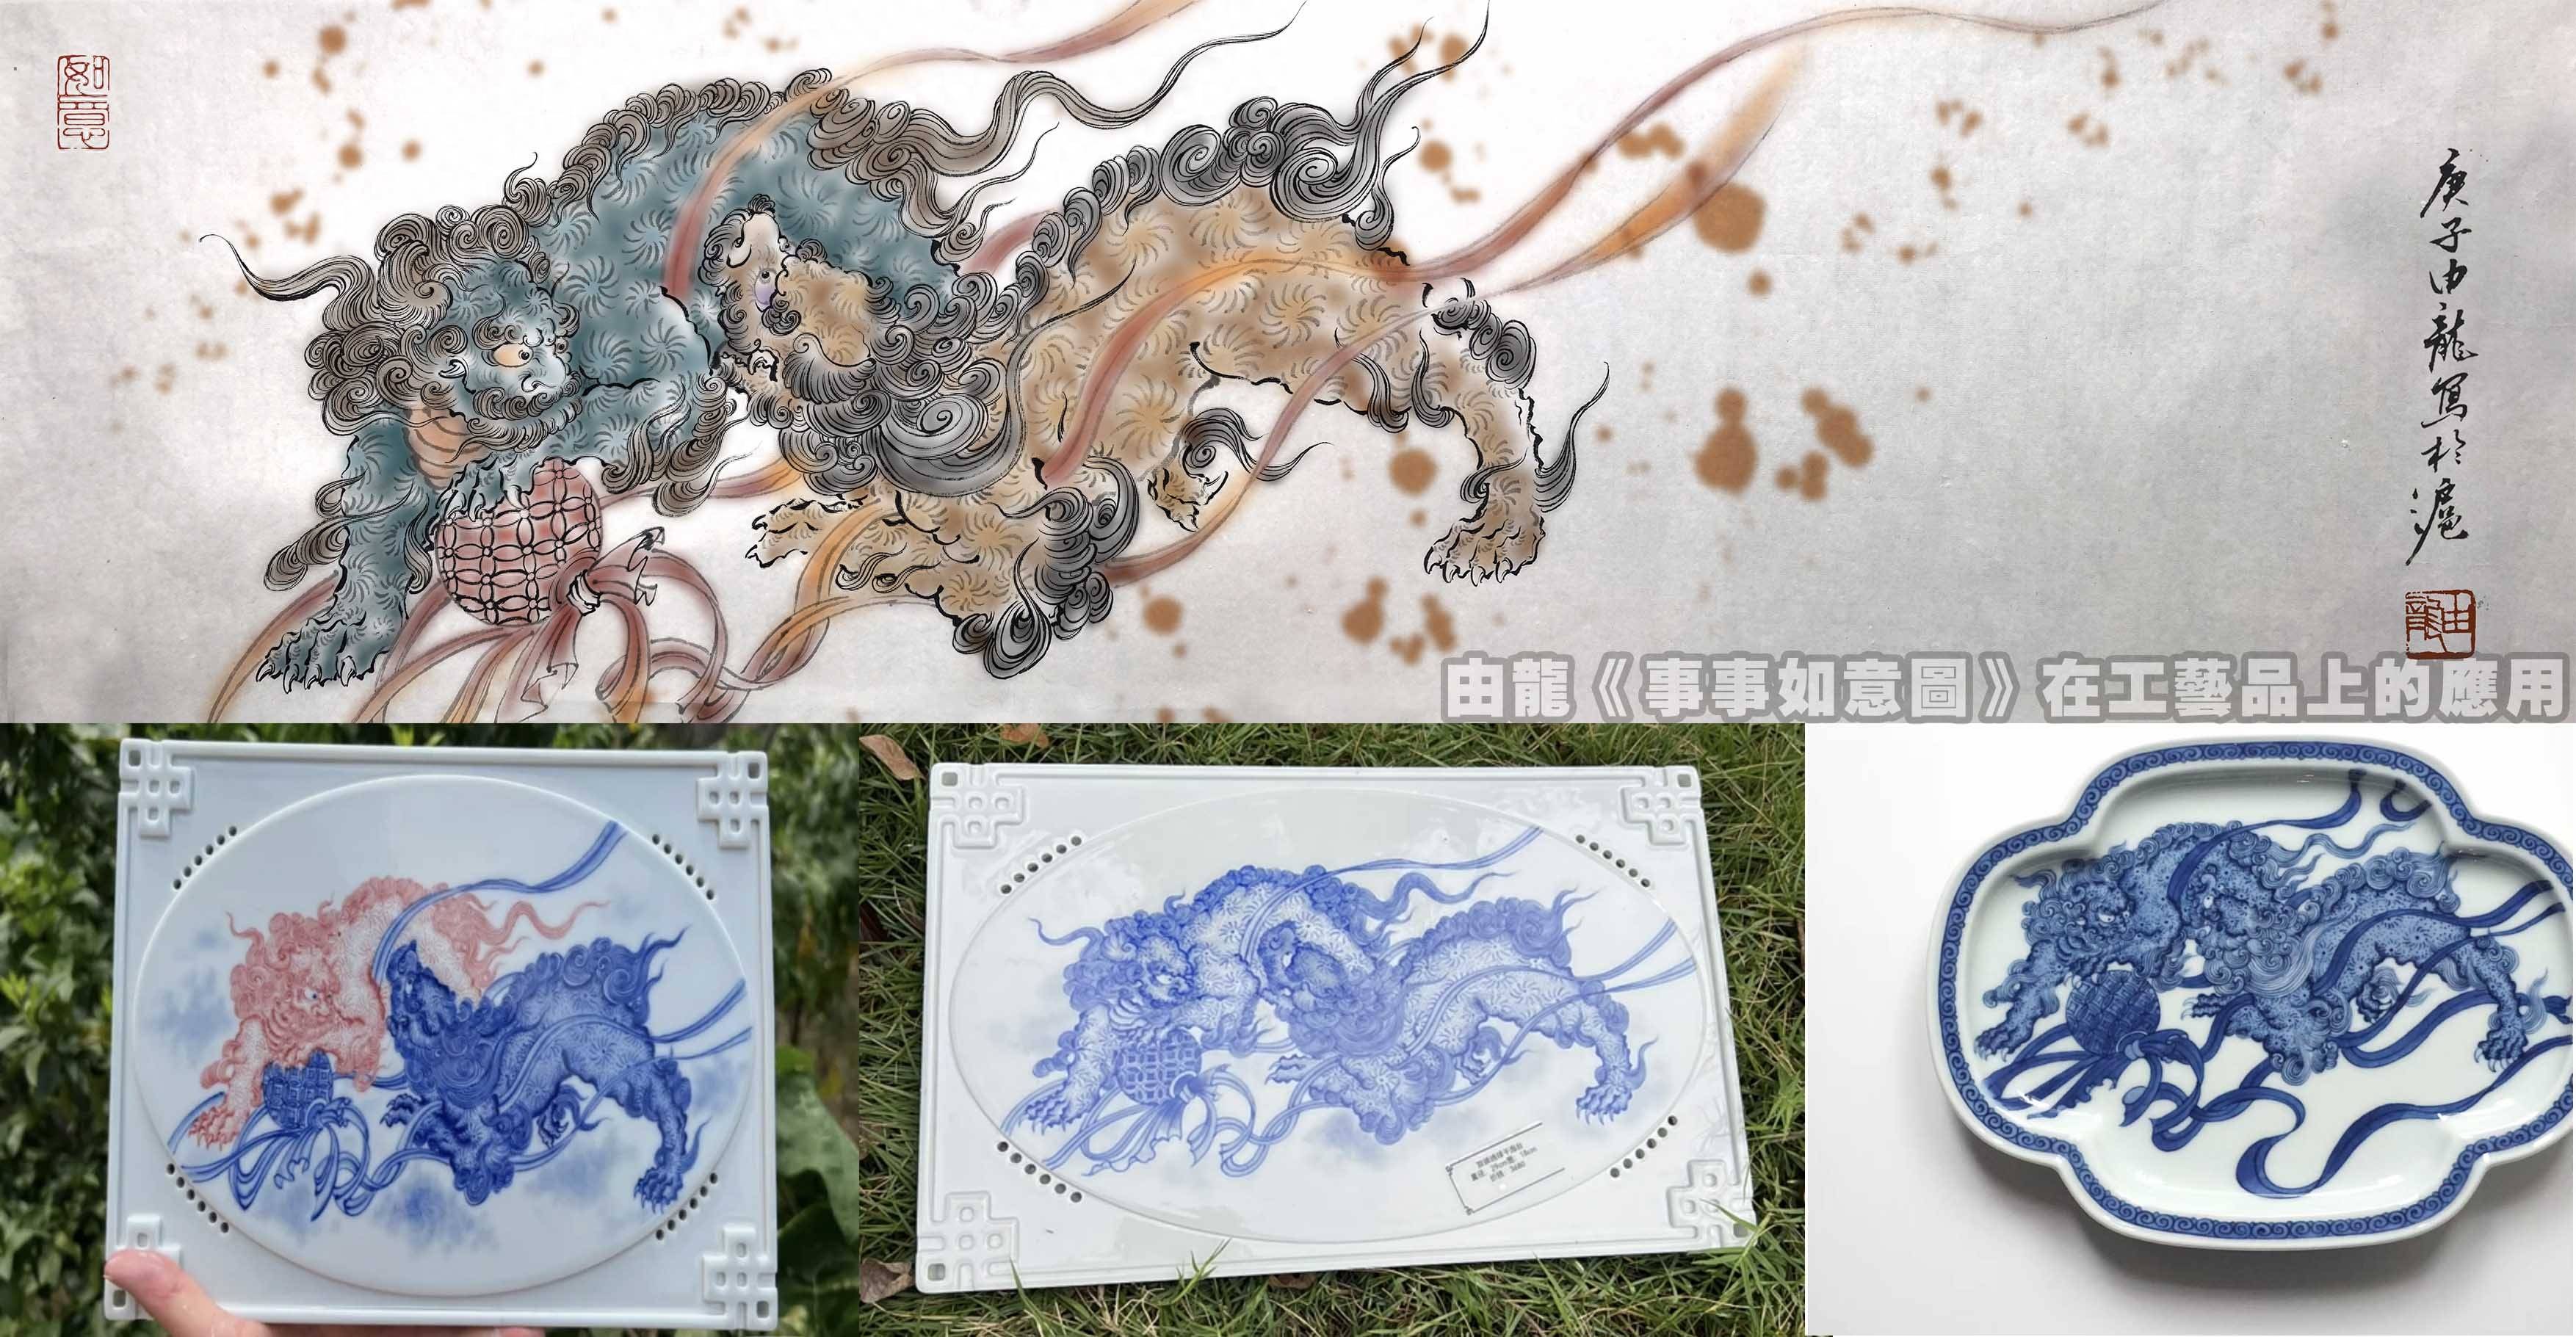 由龙：中华民族龙纹研究与工艺艺术品应用-时尚热点网